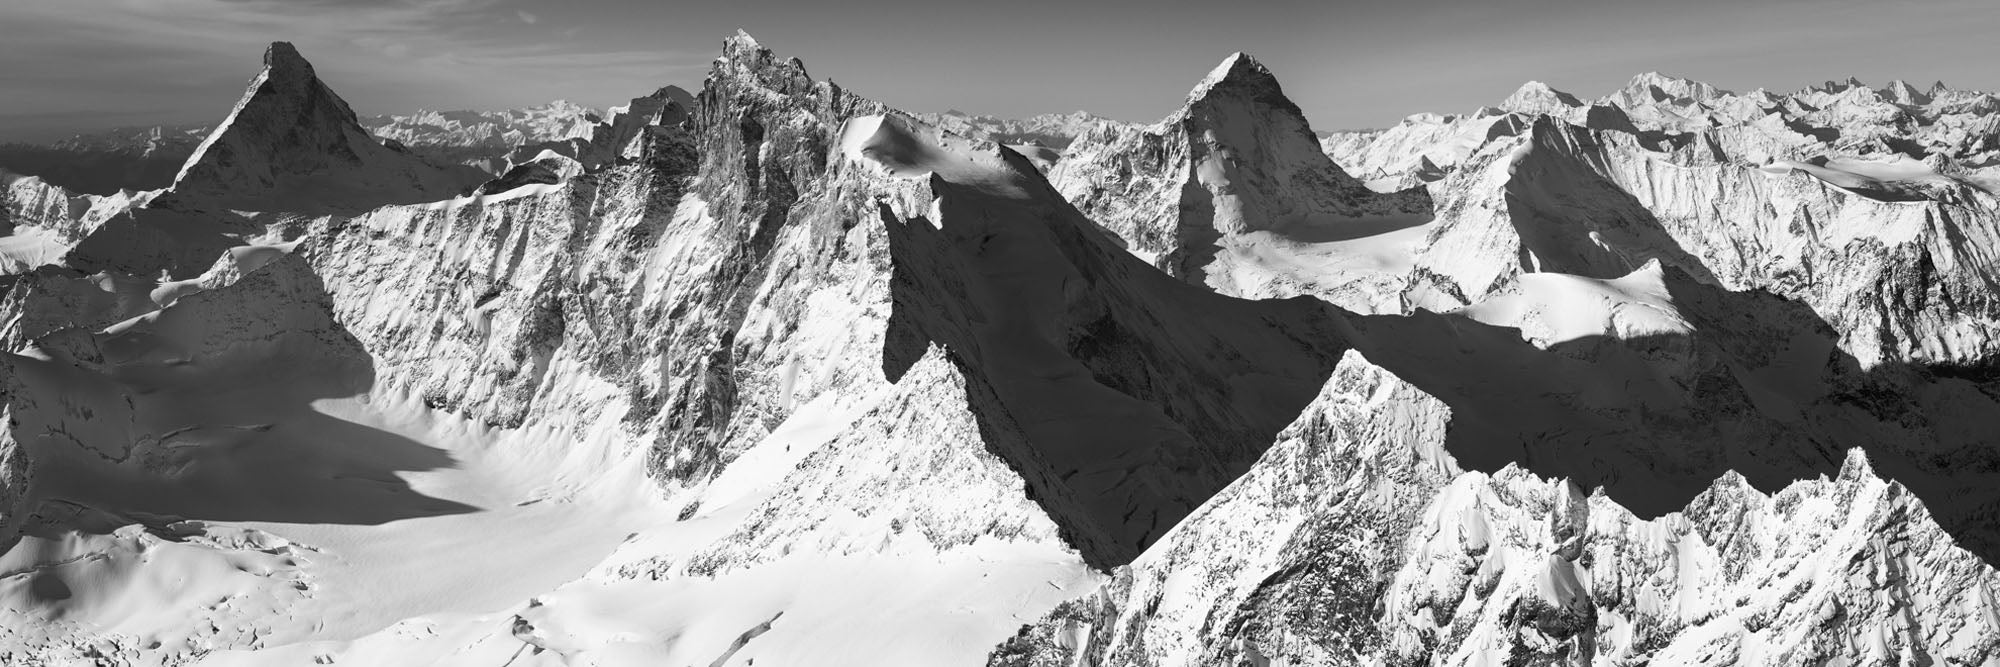 Zermatt 4000, Panorama, Switzerland - Petra Gut Contemporary AG Thomas Crauwels